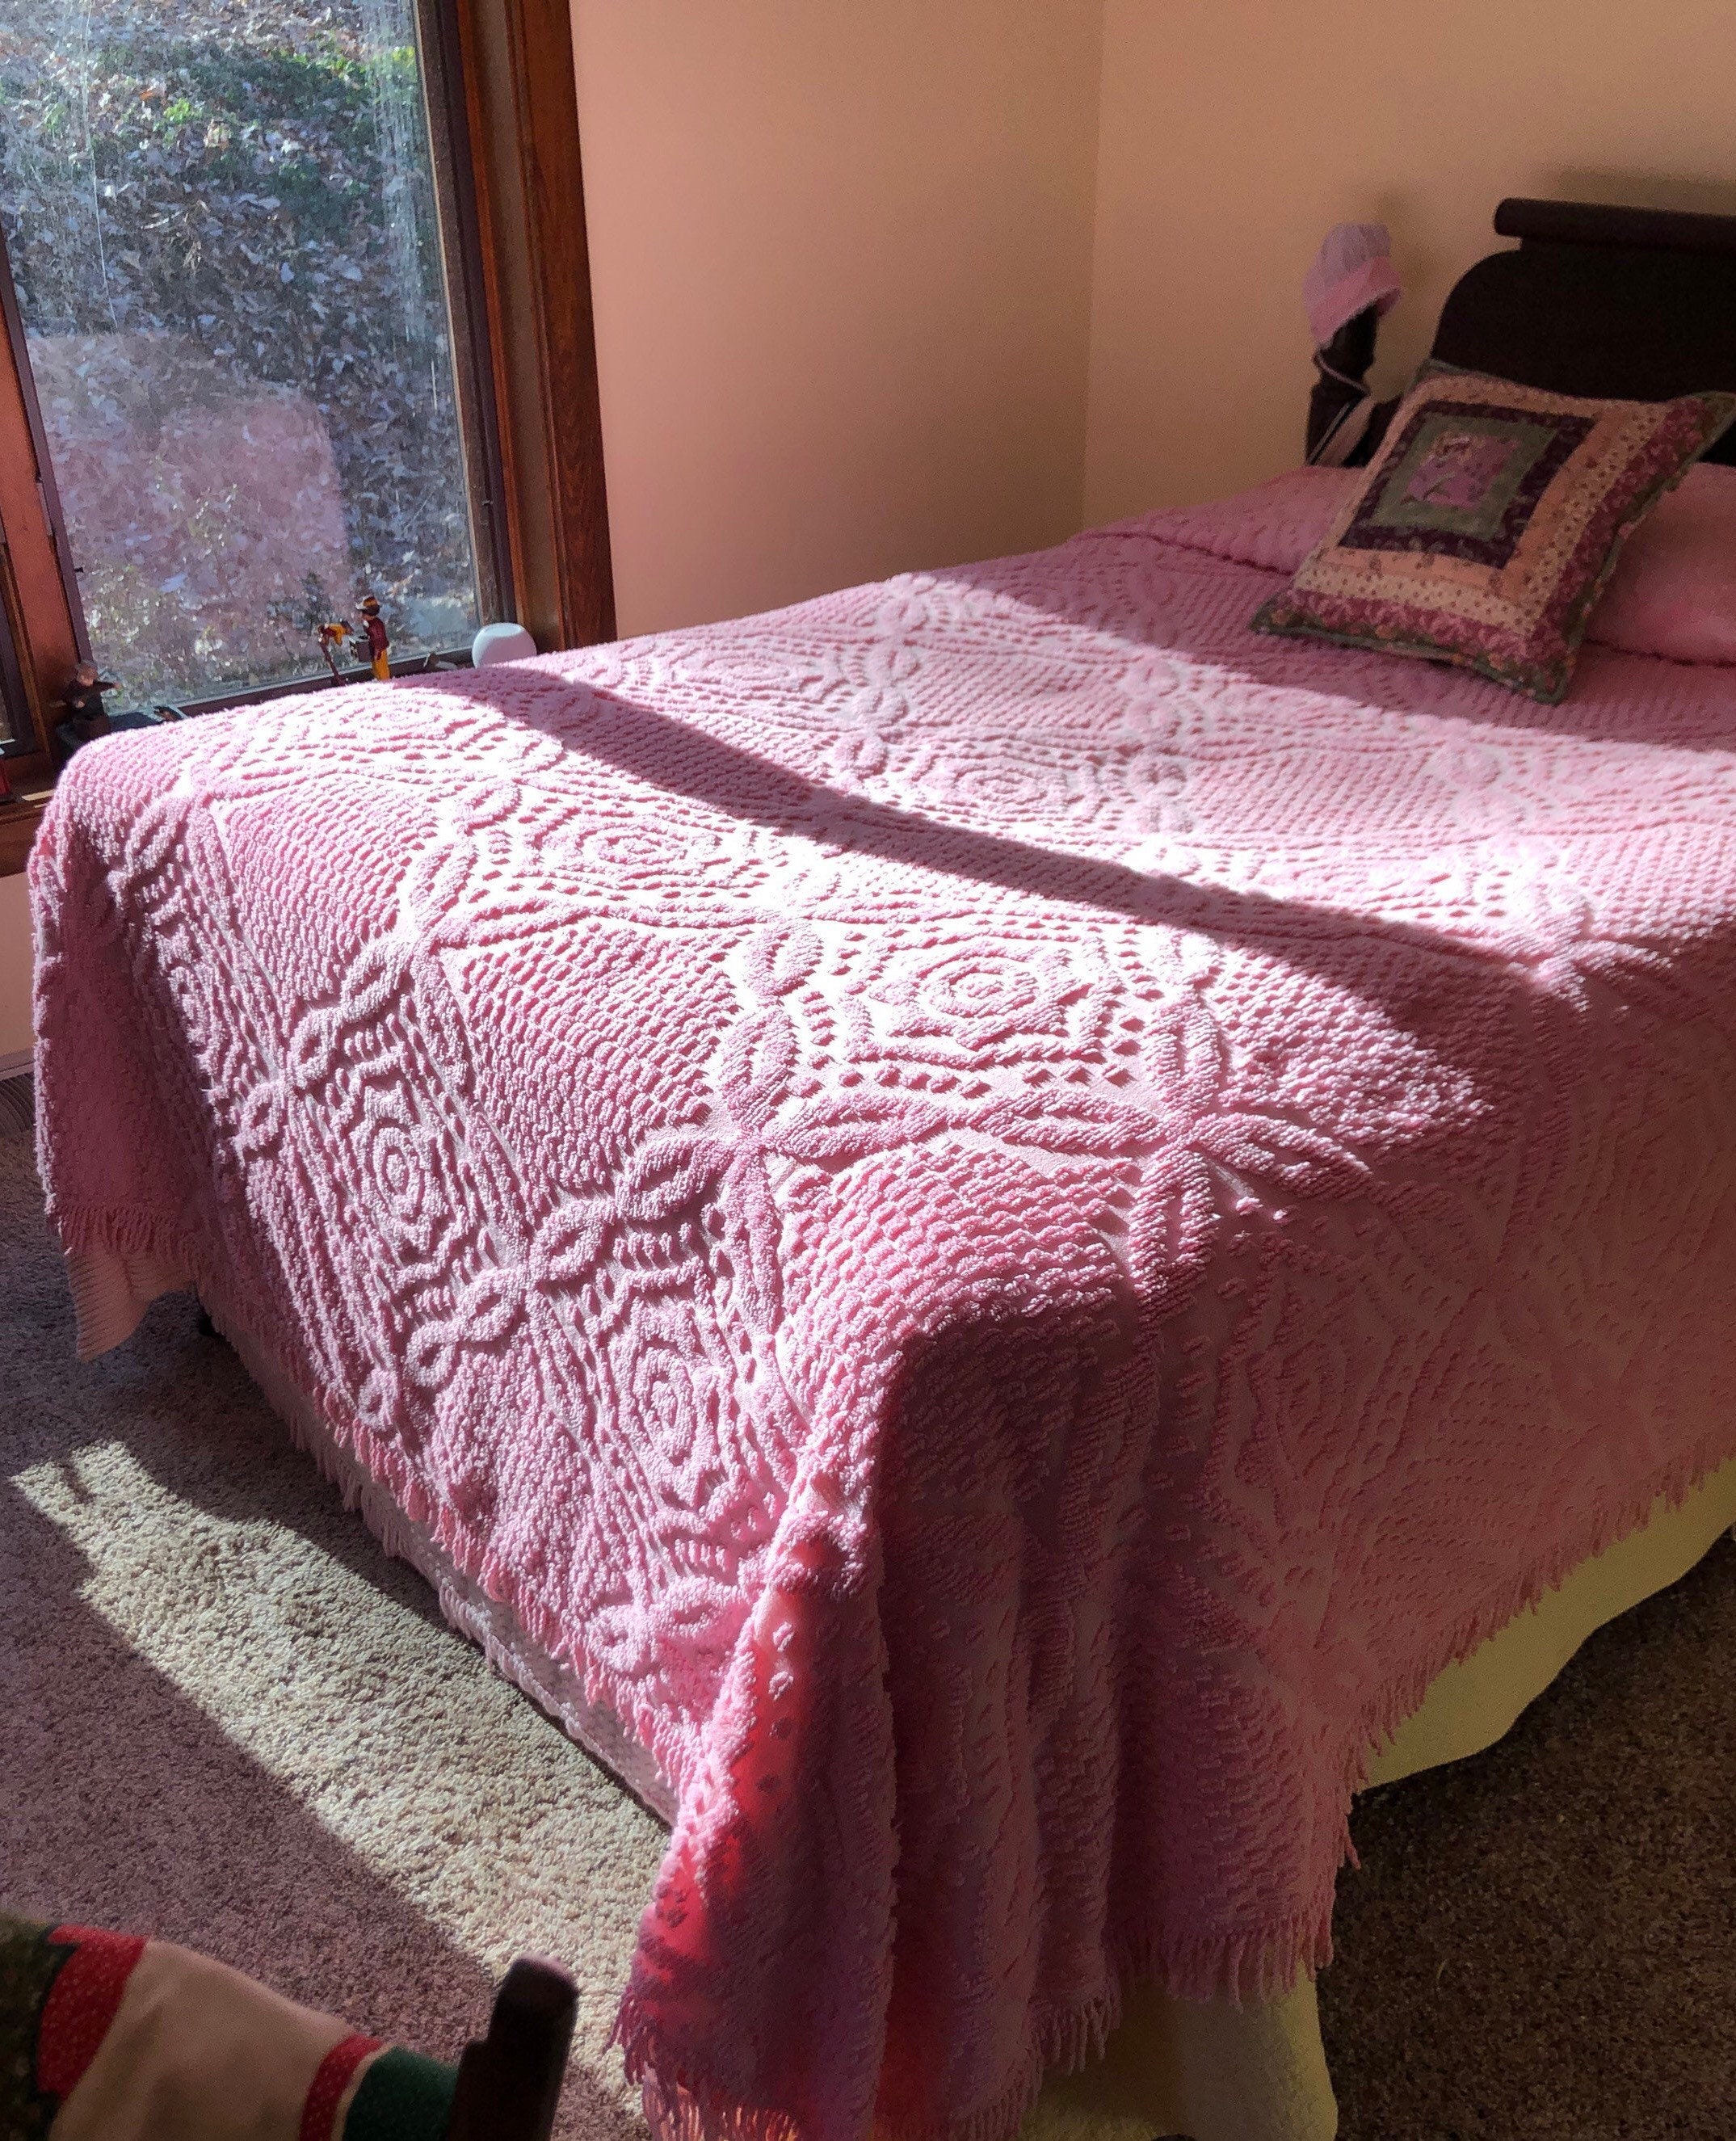 Dada Bedding Cotton Chenille Rug, Pink